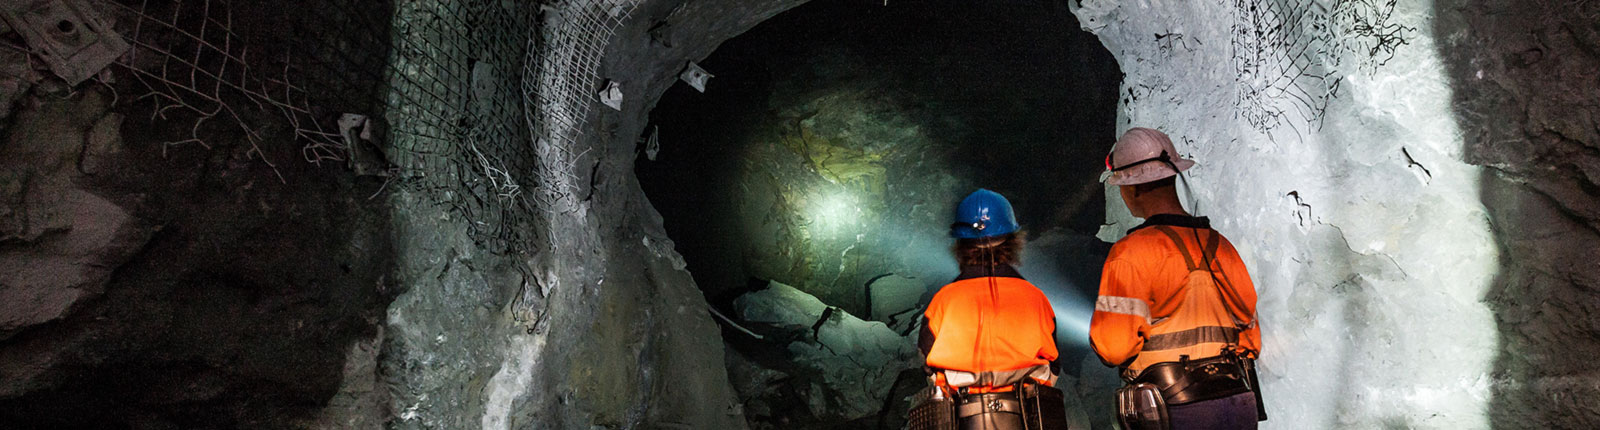 Maptek VisionV2X Underground Mine Worker doing drillhole analysis